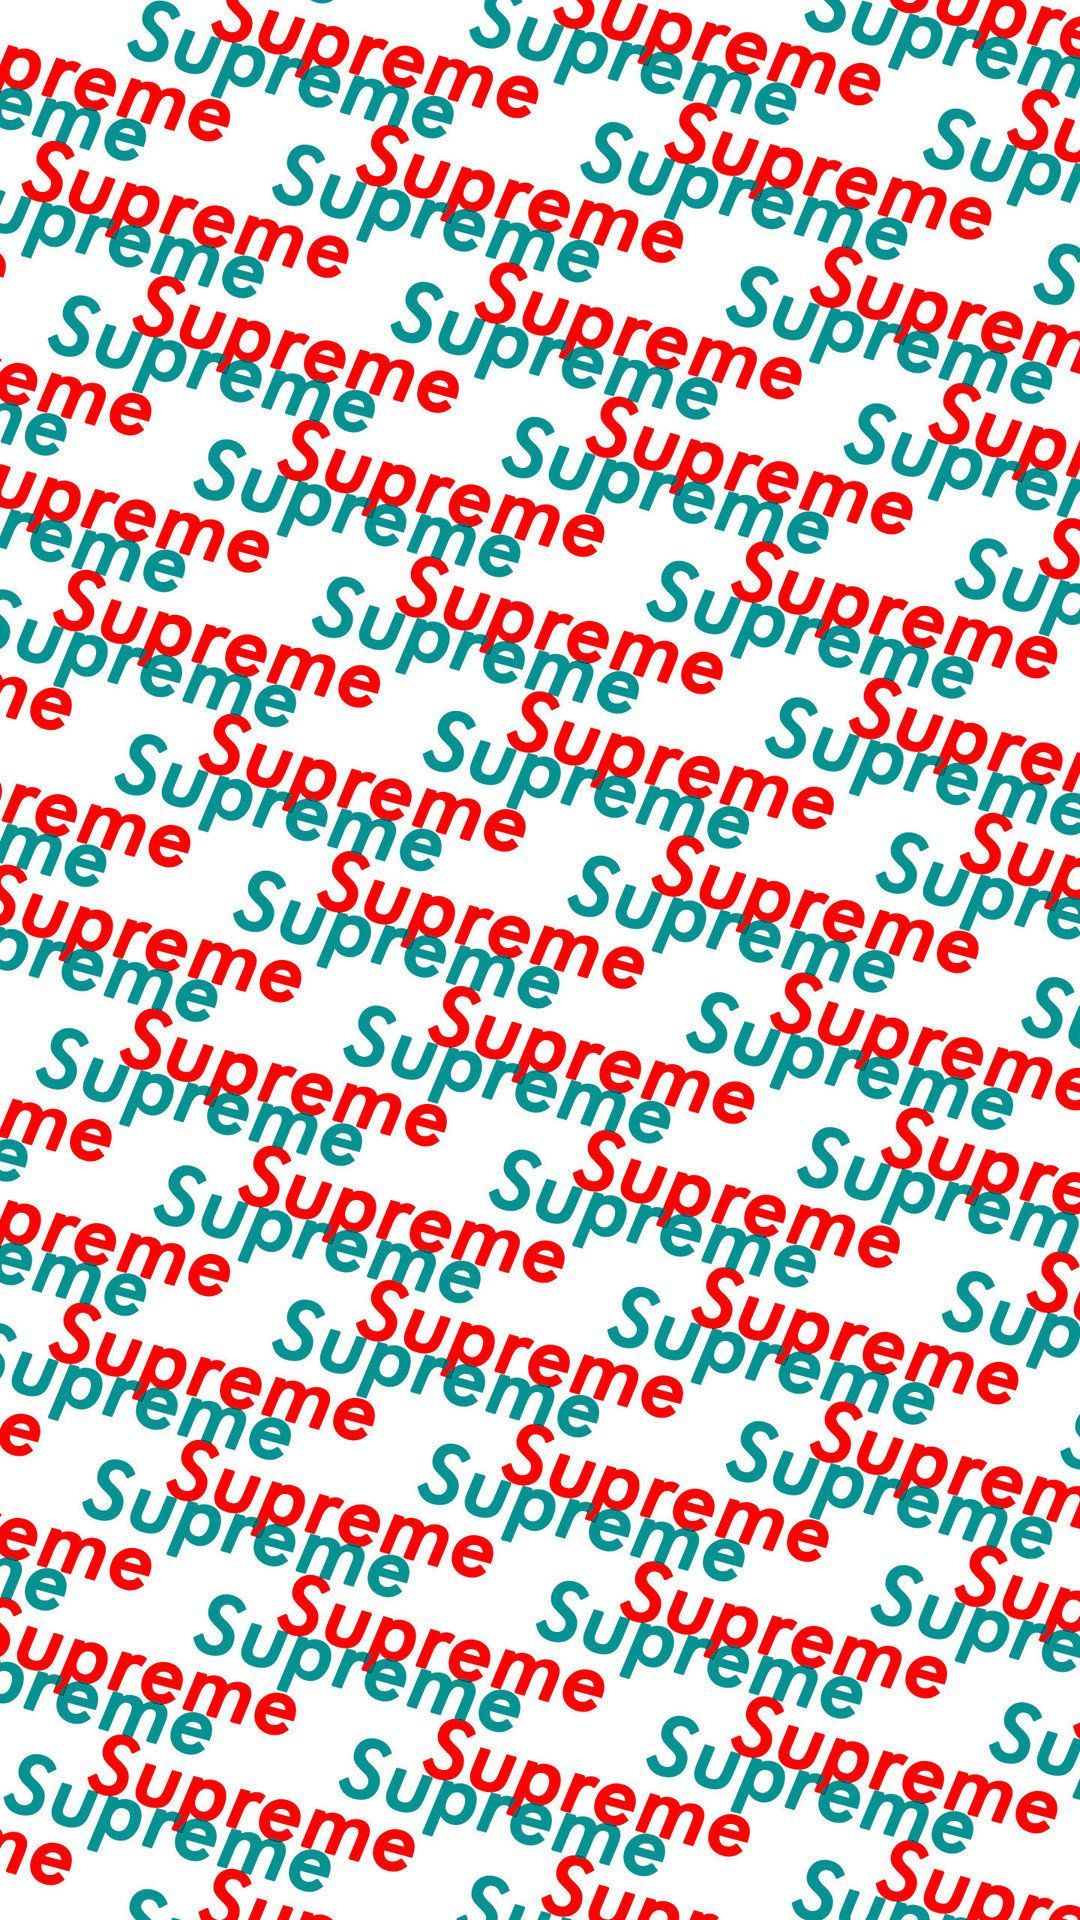 Supreme Gucci Wallpapers - WallpaperSafari  Supreme iphone wallpaper, Supreme  wallpaper, Hypebeast wallpaper